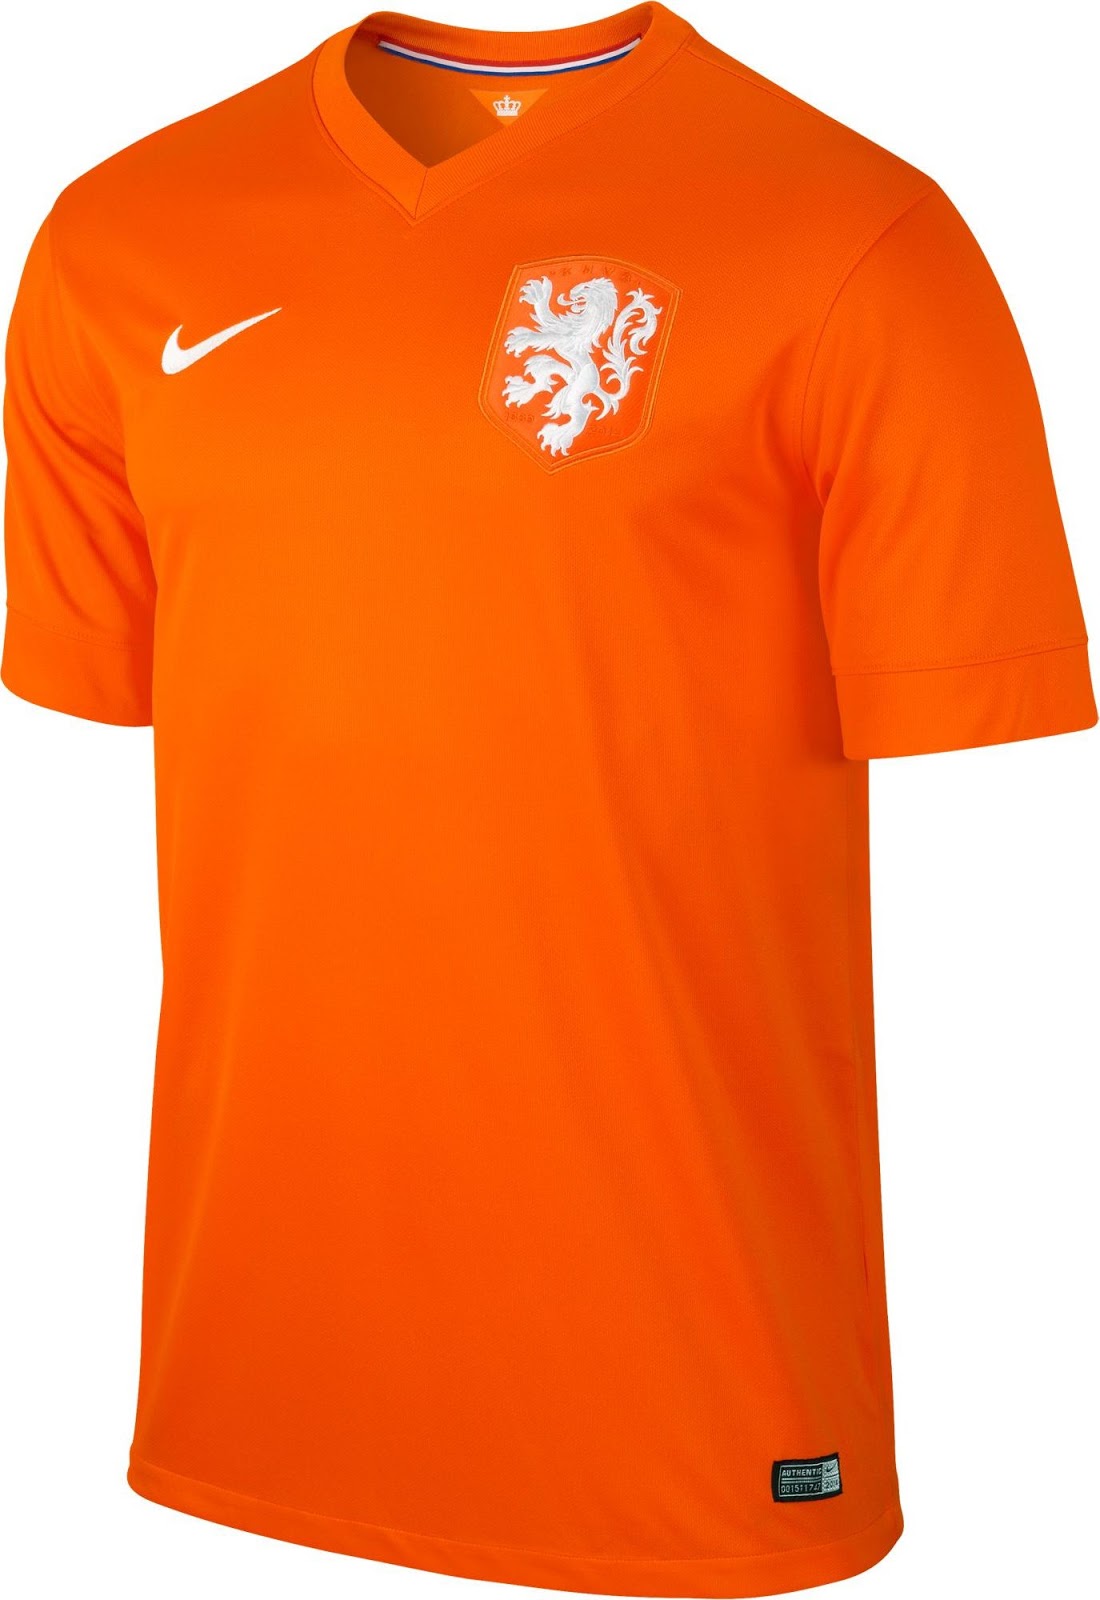 オランダ代表 14年w杯ユニフォーム ユニ11